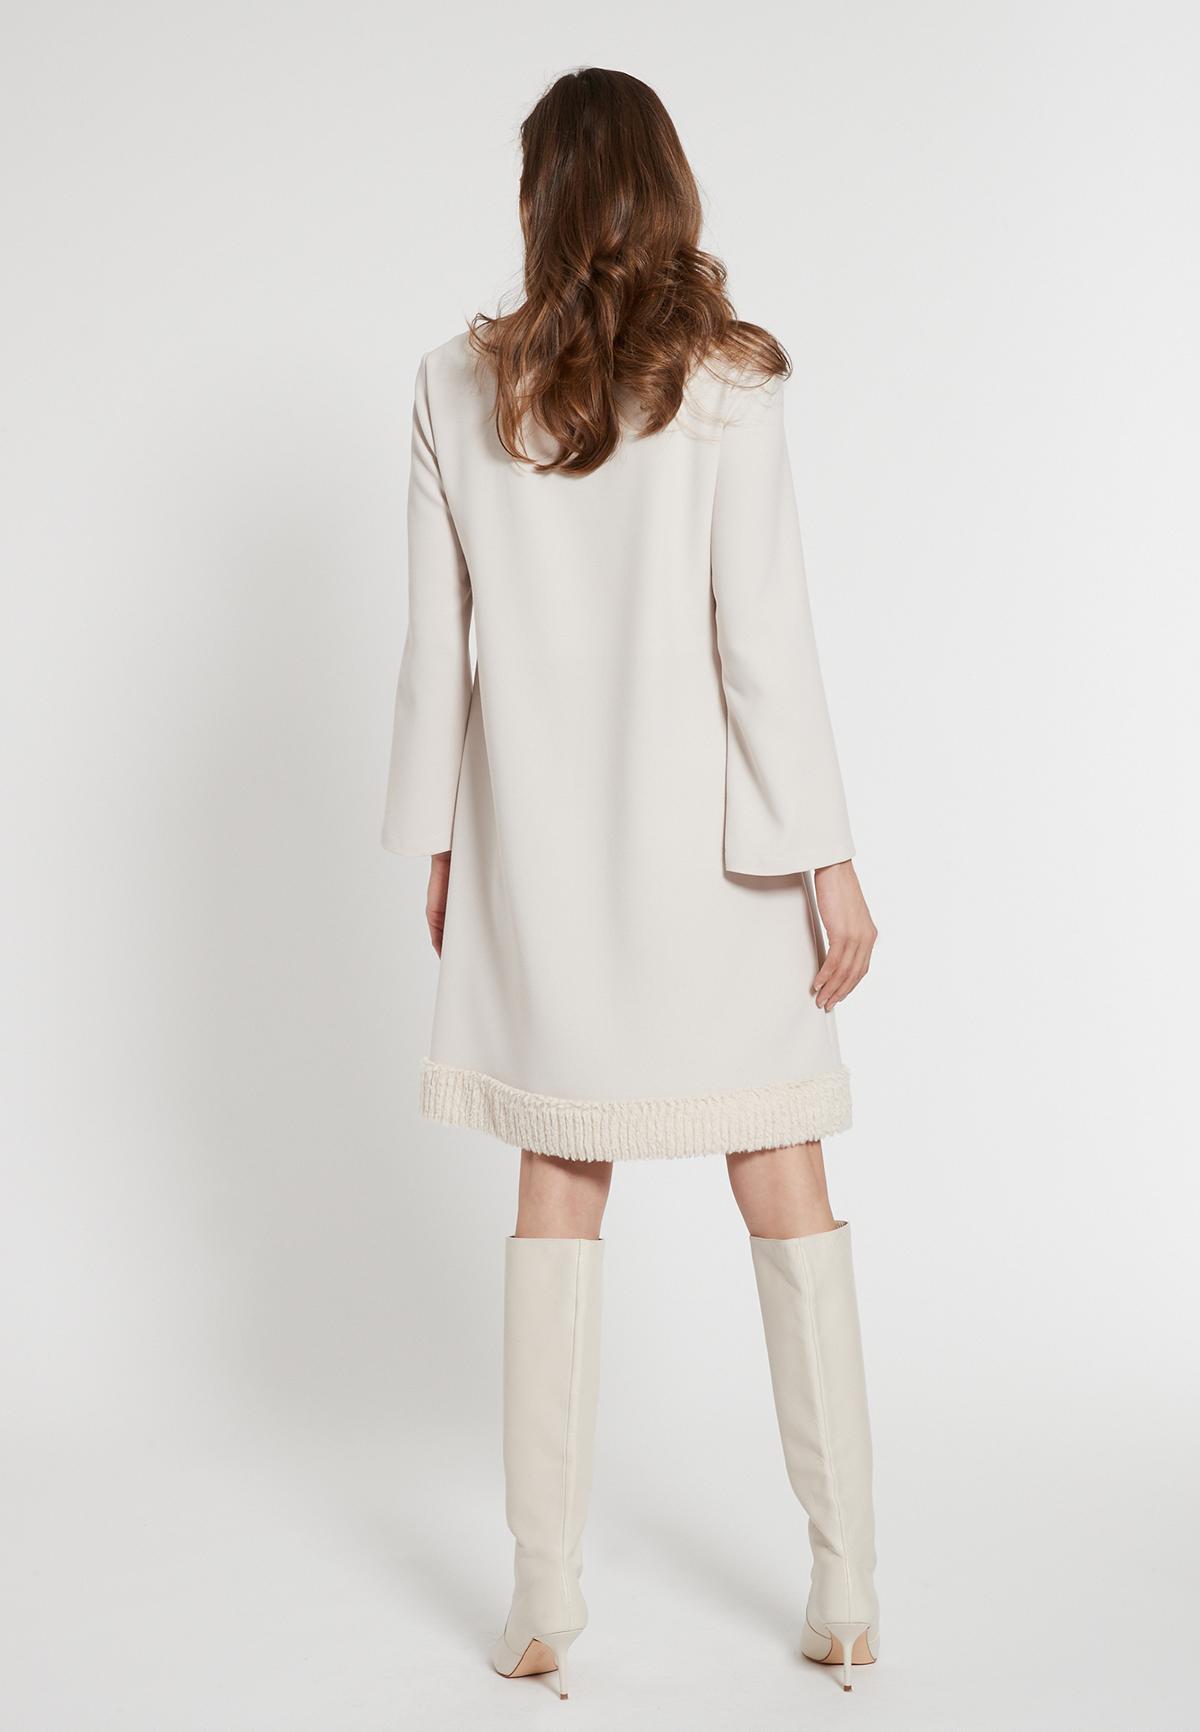 A-shaped dress Eadora in offwhite with fake fur trim | Ana Alcazar